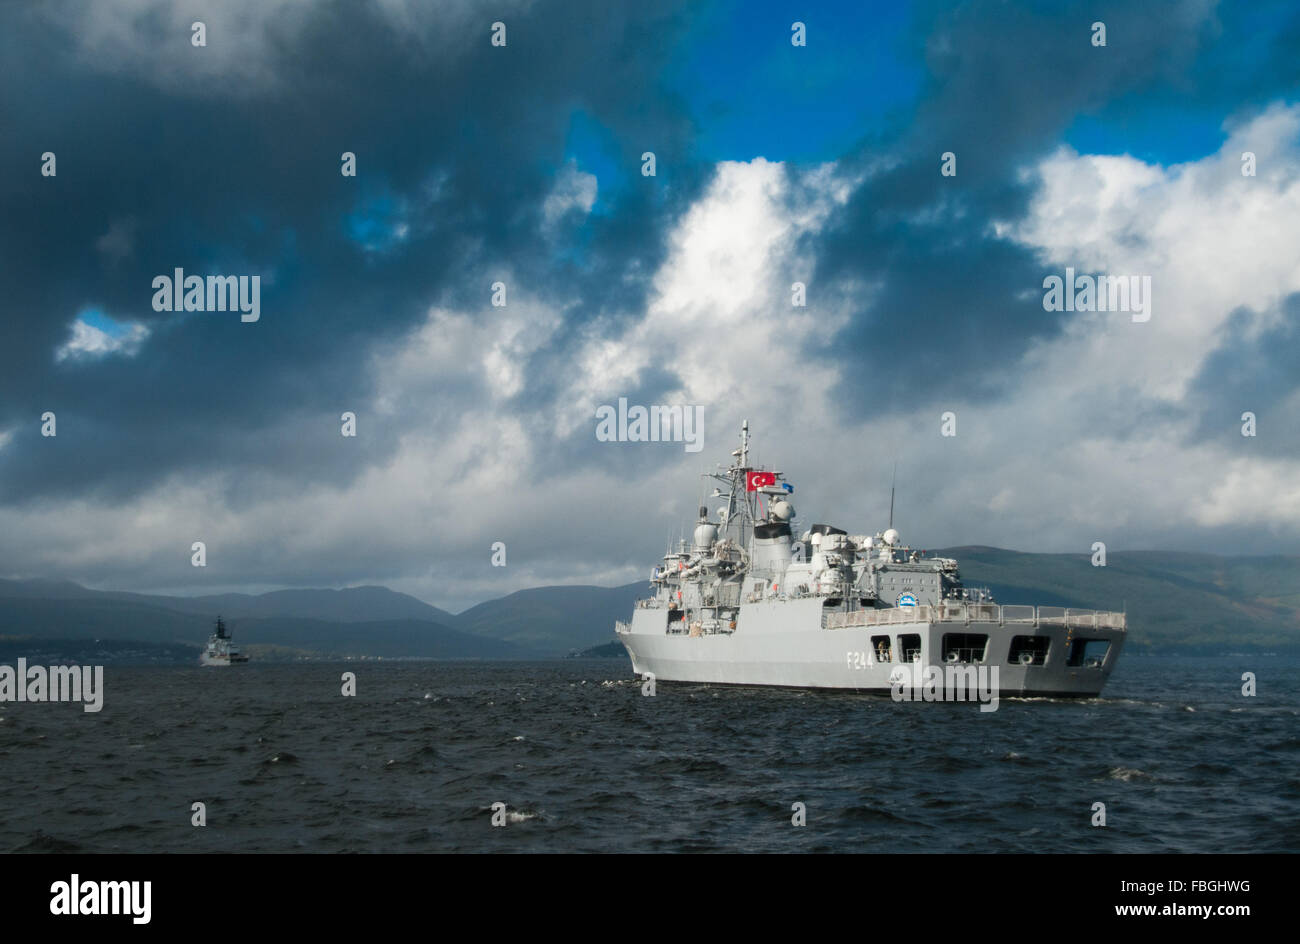 TCG Barbaros un navire de guerre moderne turque lors des exercices de l'OTAN au large de la côte ouest de l'Ecosse. Banque D'Images